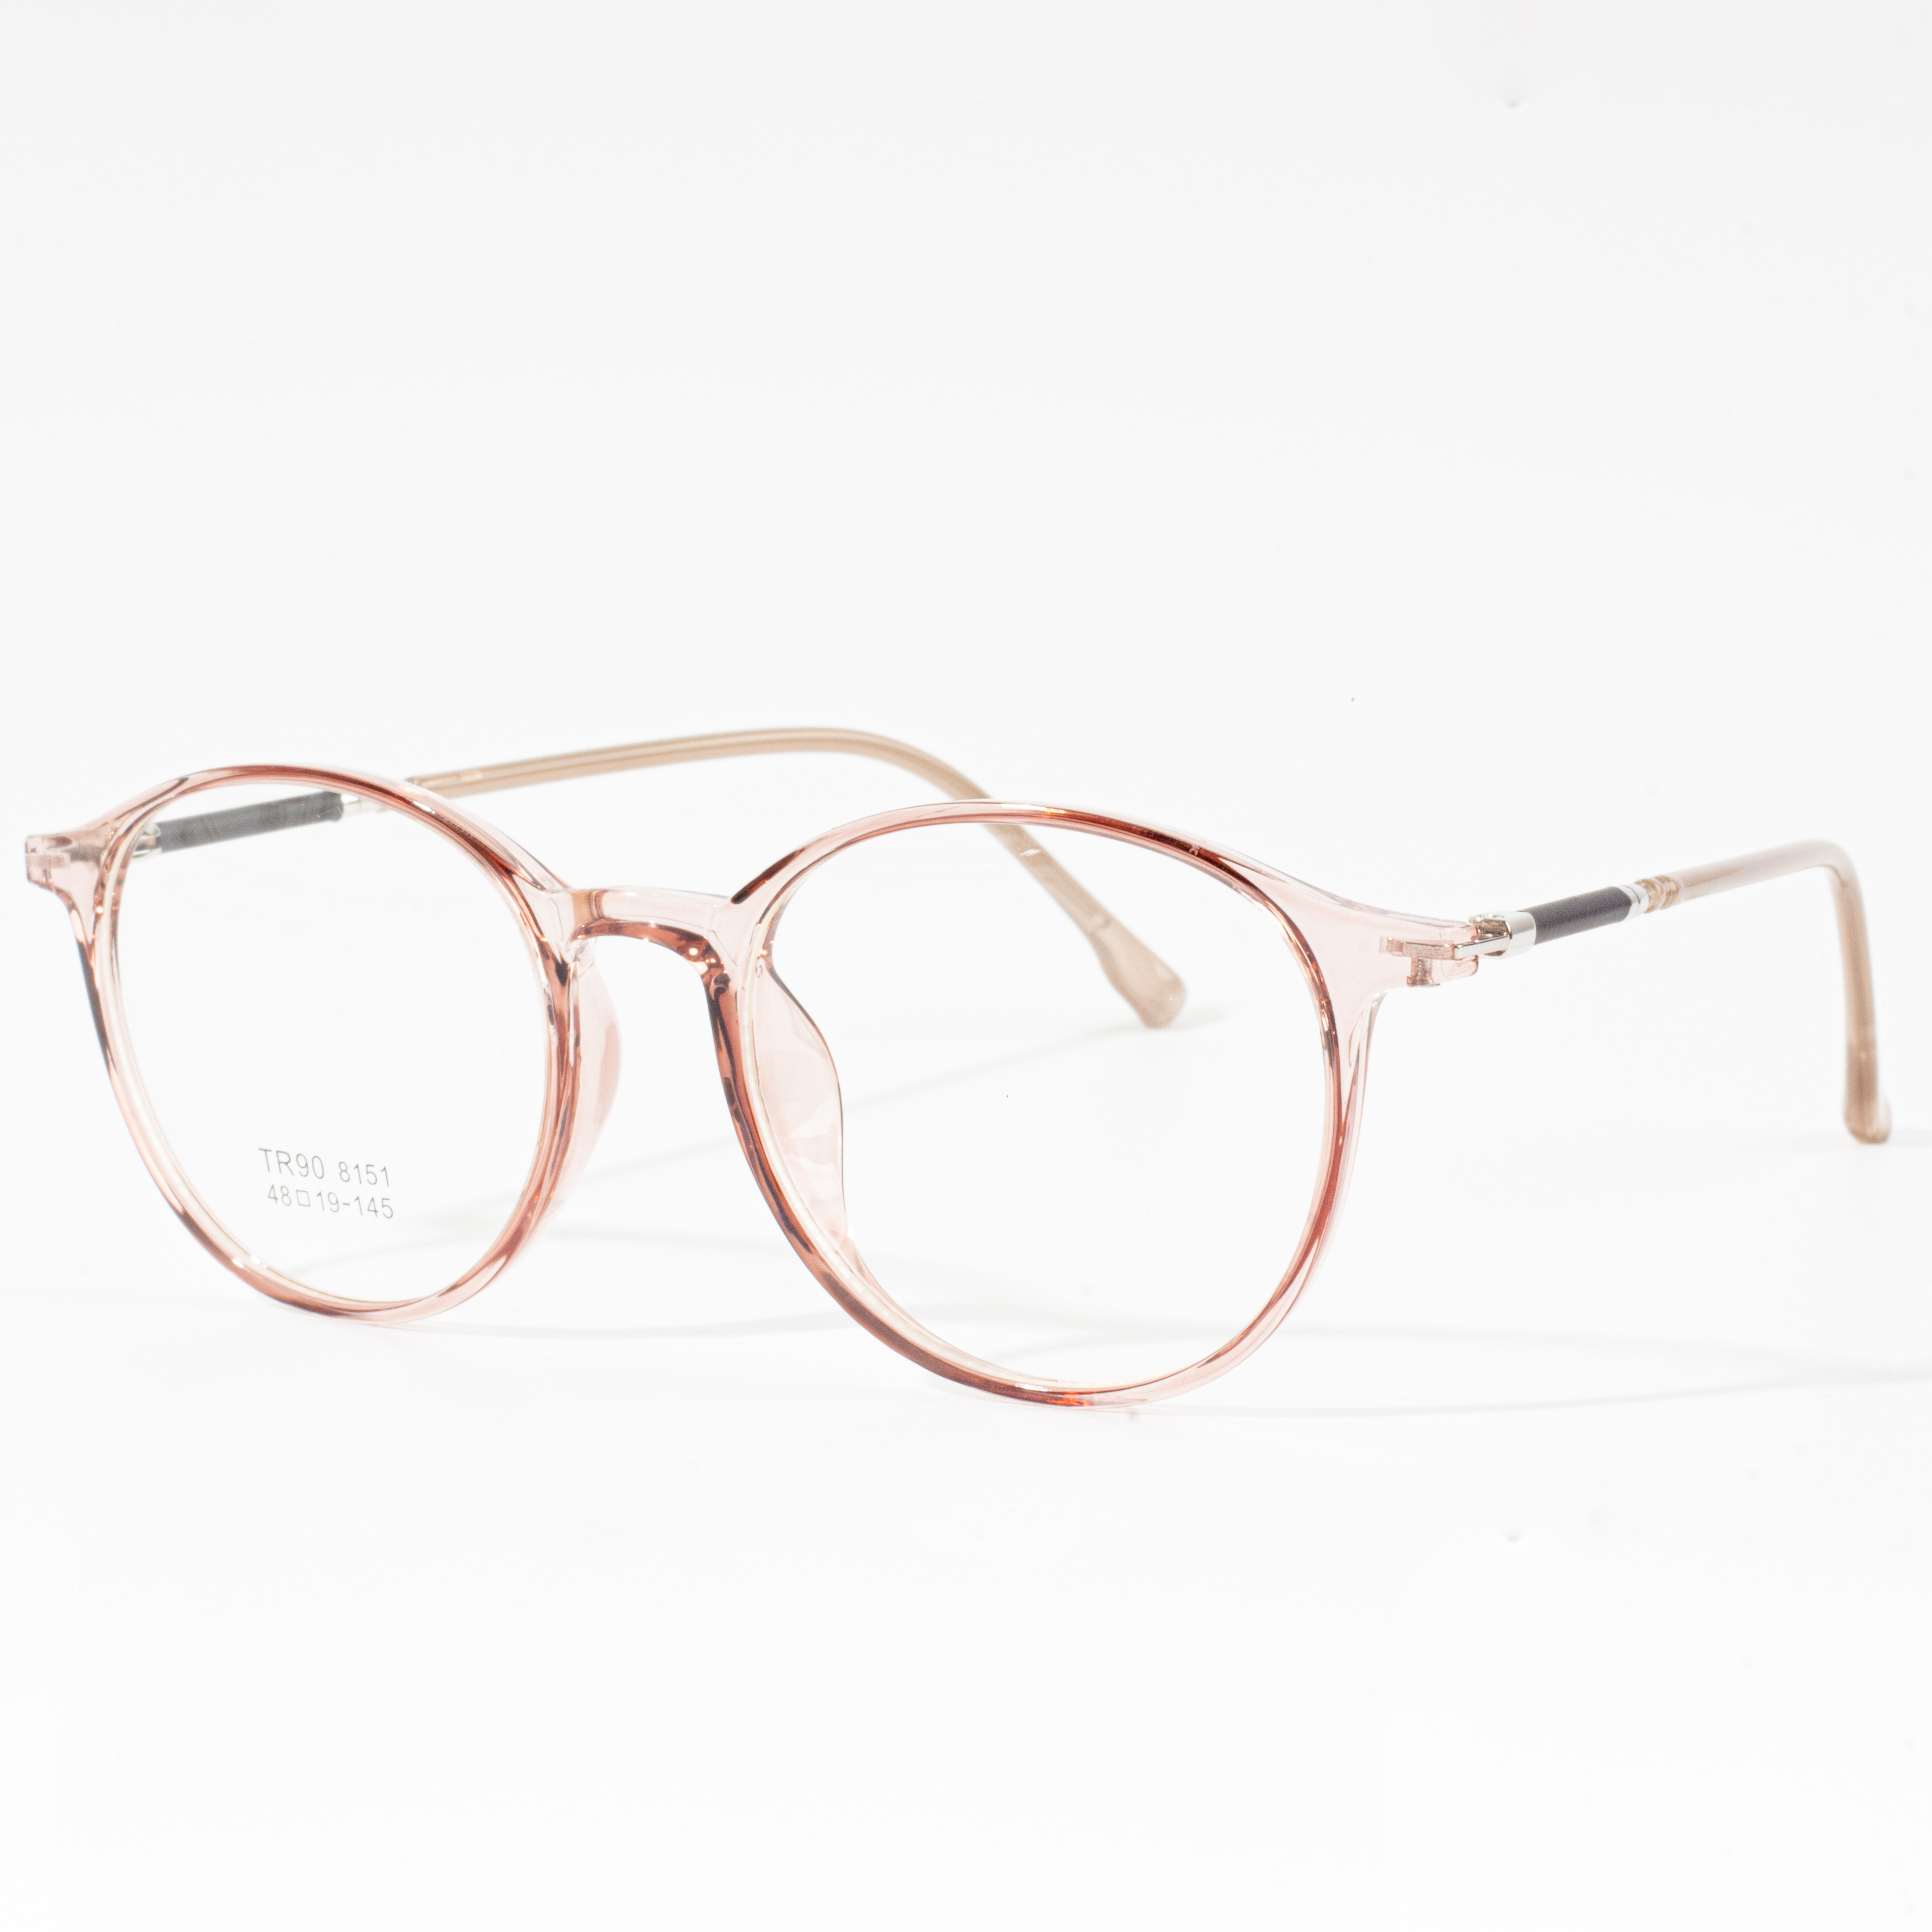 Ontwerperrame vir mans en vroue - Eyeglasses.com 广告· https://www.eyeglasses.com/ (888) 896-3885 Koop vandag ontwerperrame van top wêreldwye brilhandelsmerke vir die helfte van kleinhandelpryse.